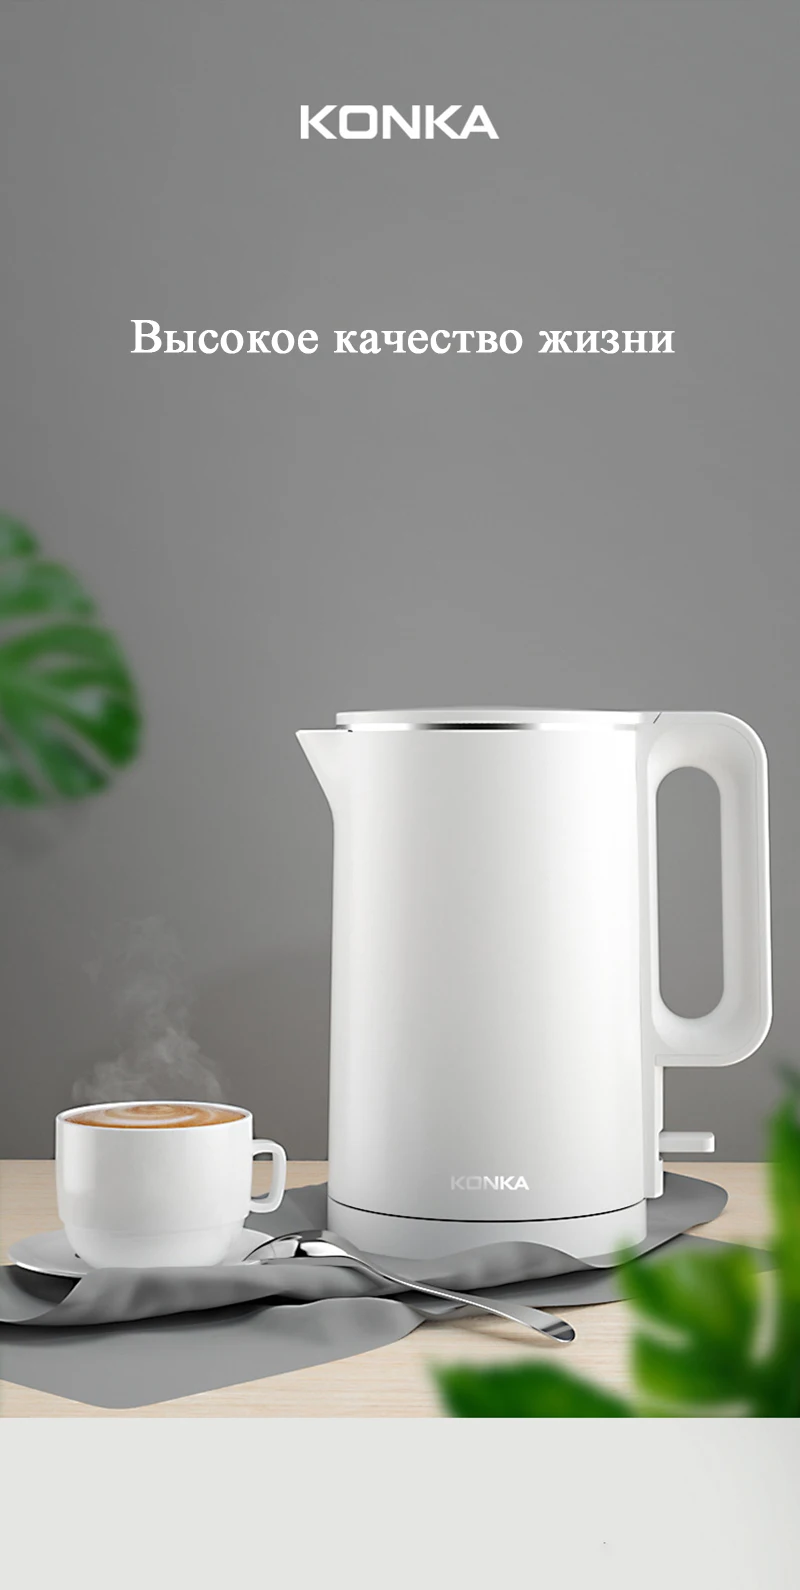 KONKA электрический чайник 1.7L Большая емкость 1500W умный чайник для воды Точный контроль температуры